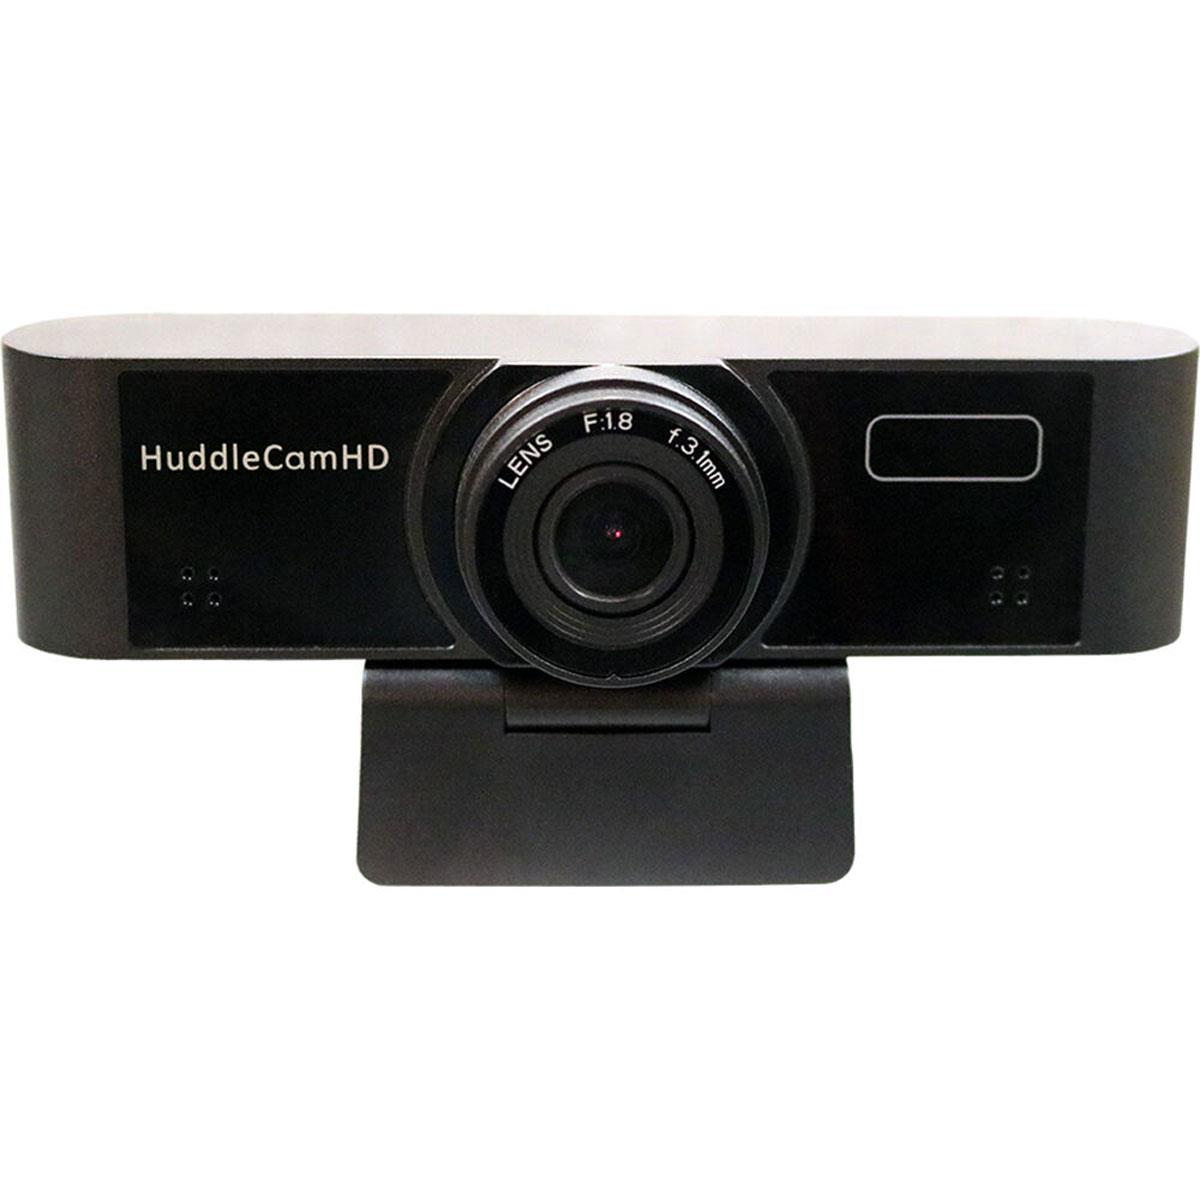 Image of HuddleCamHD Conferencing Webcam V2